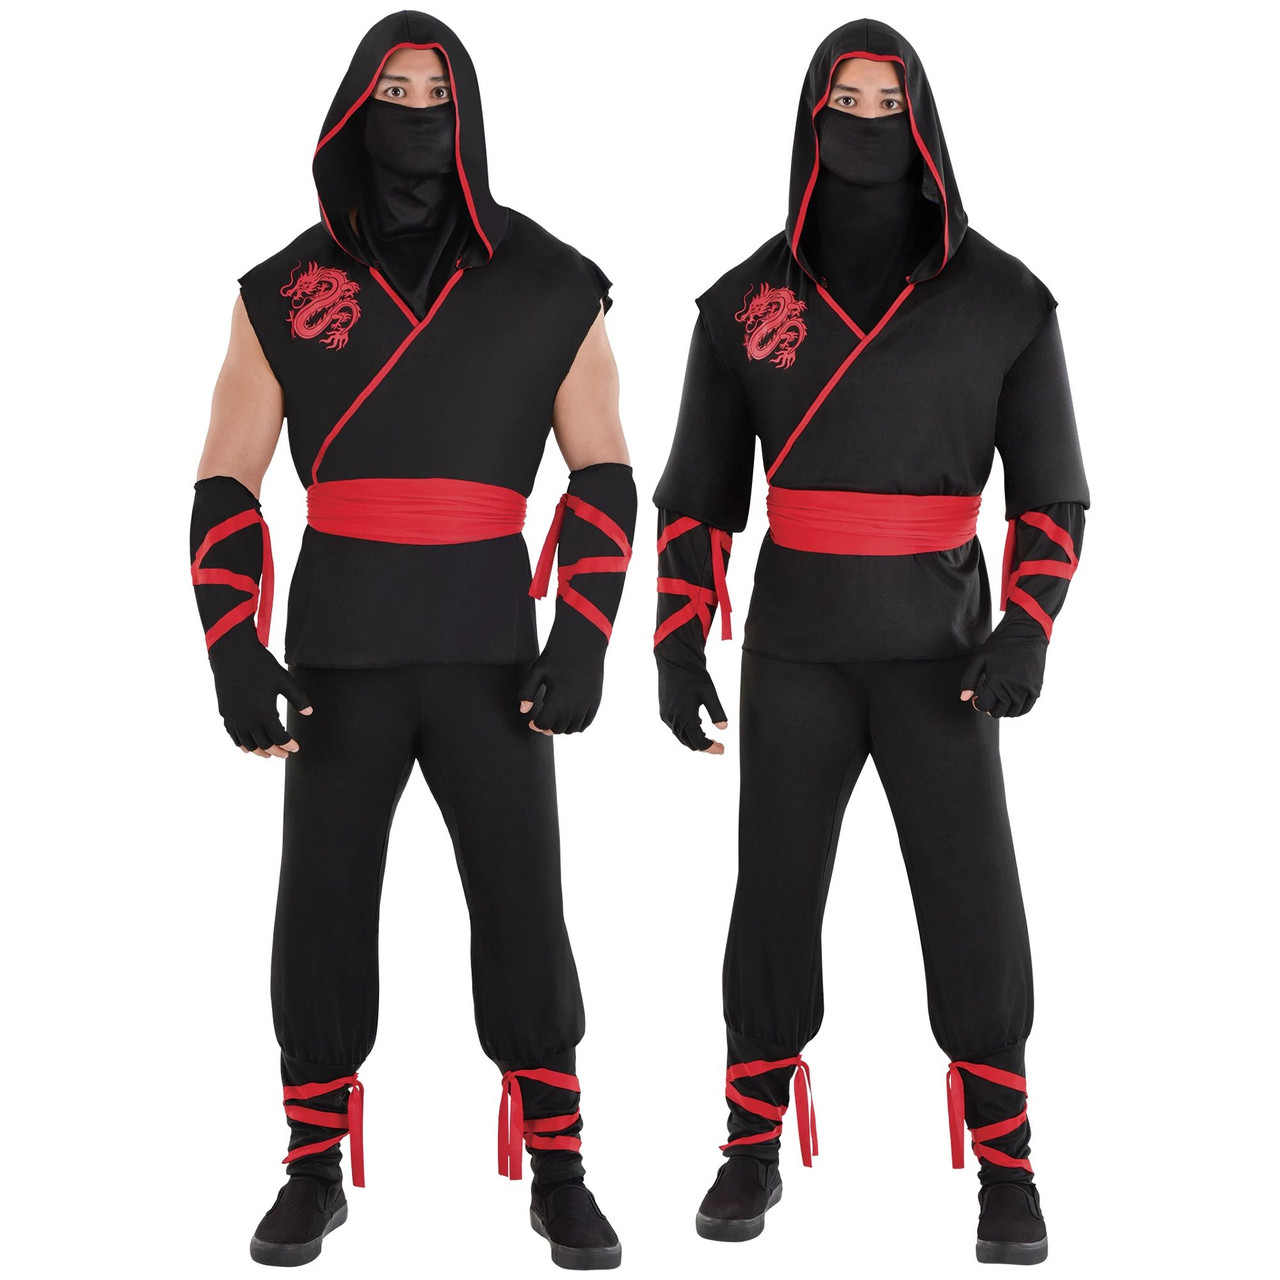 Ninja Assassin Costume for Men